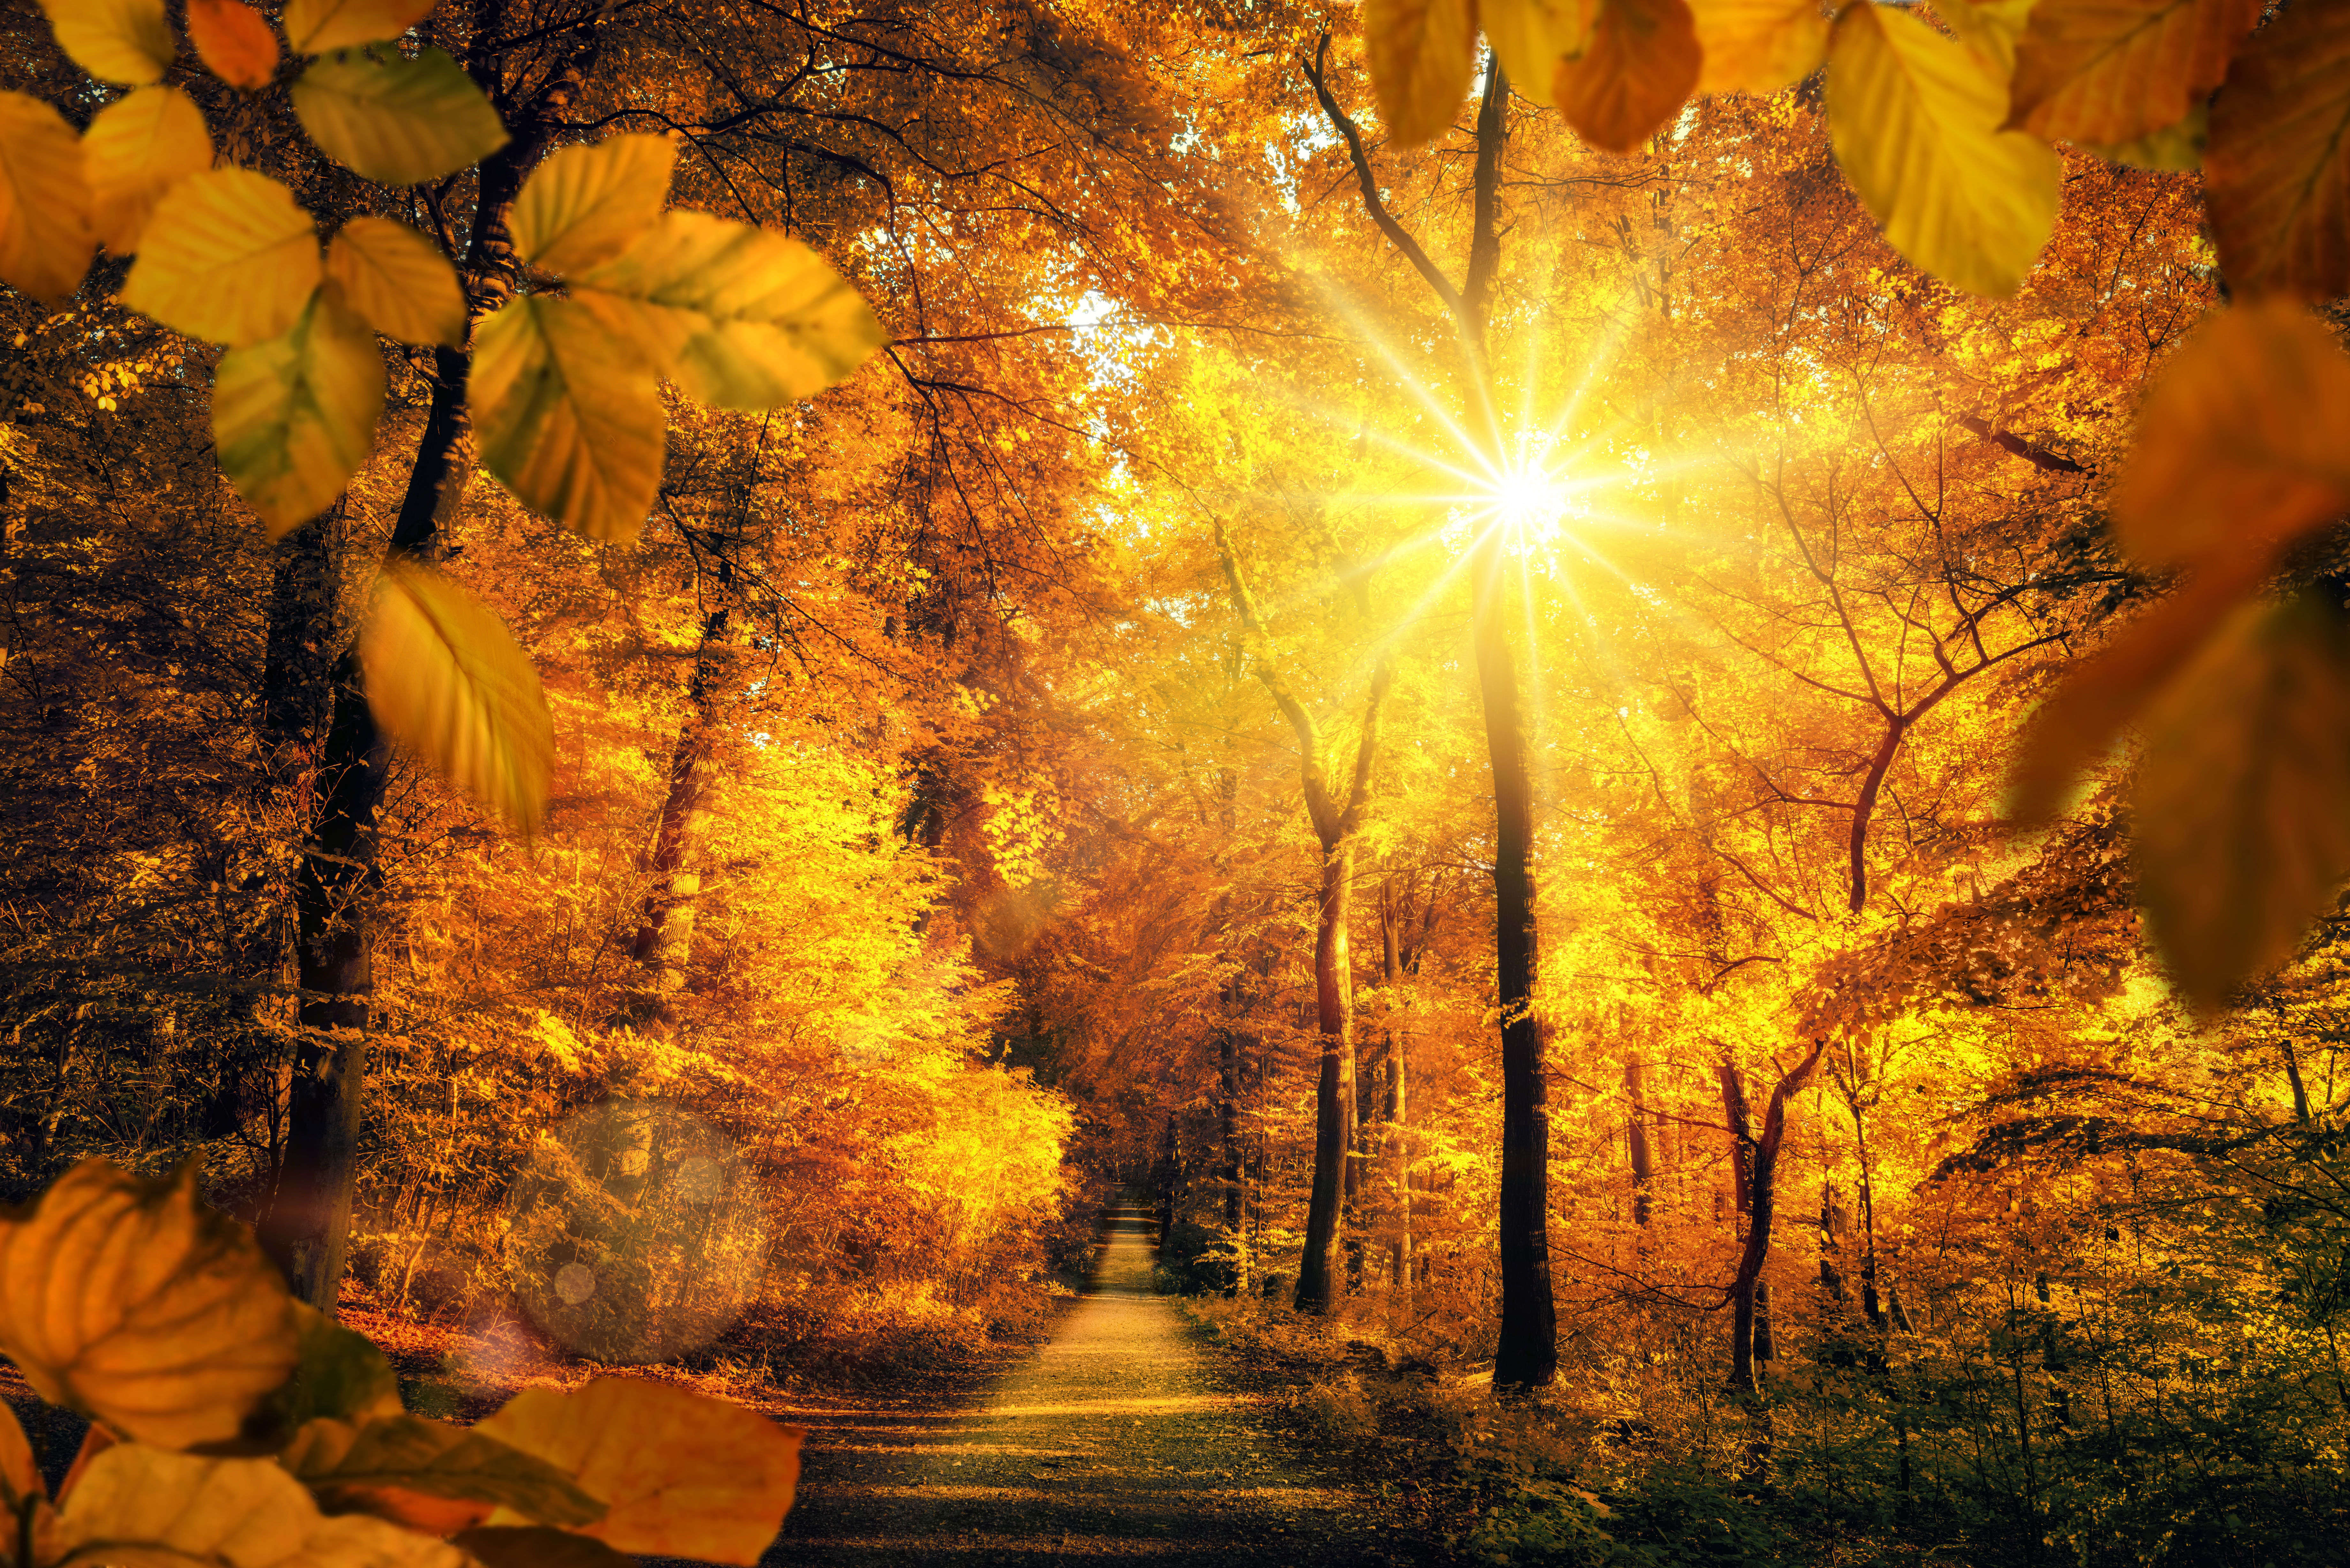 Скачать обои бесплатно Природа, Осень, Лес, Дерево, Дорожка, Солнечный Луч, Земля/природа картинка на рабочий стол ПК